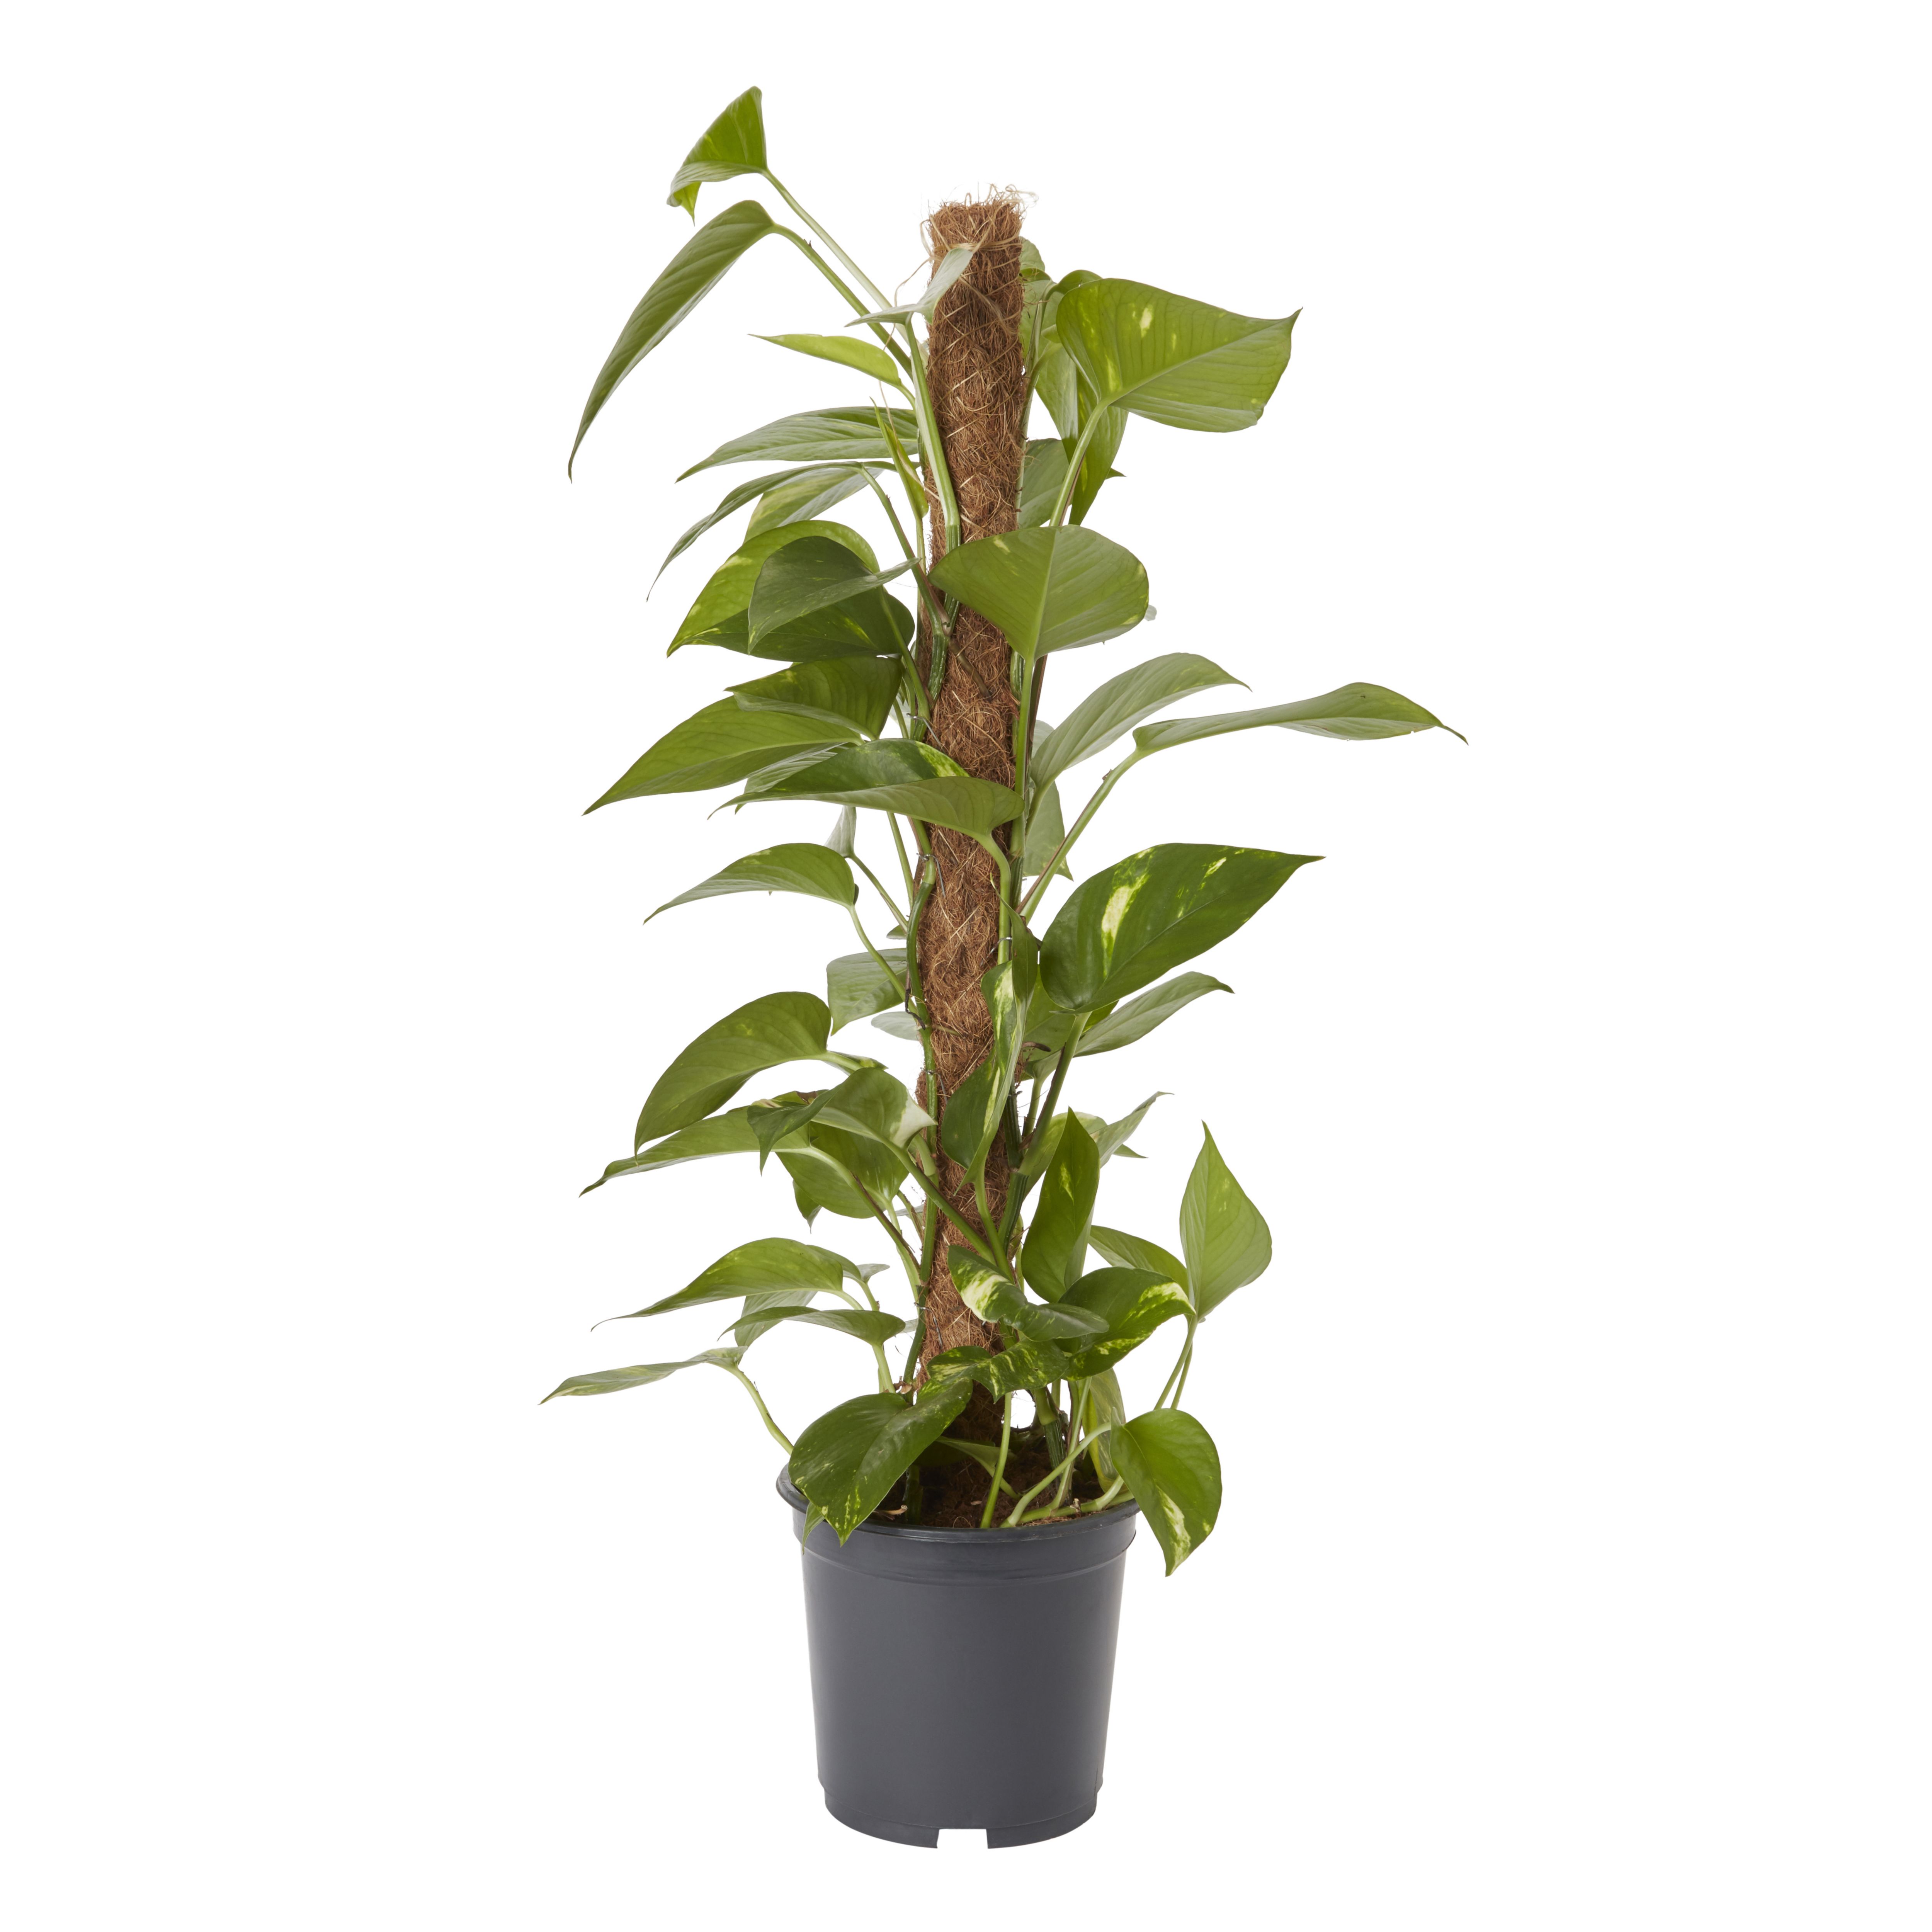 Verve Devil's ivy Foliage plant Plastic Grow pot 19cm